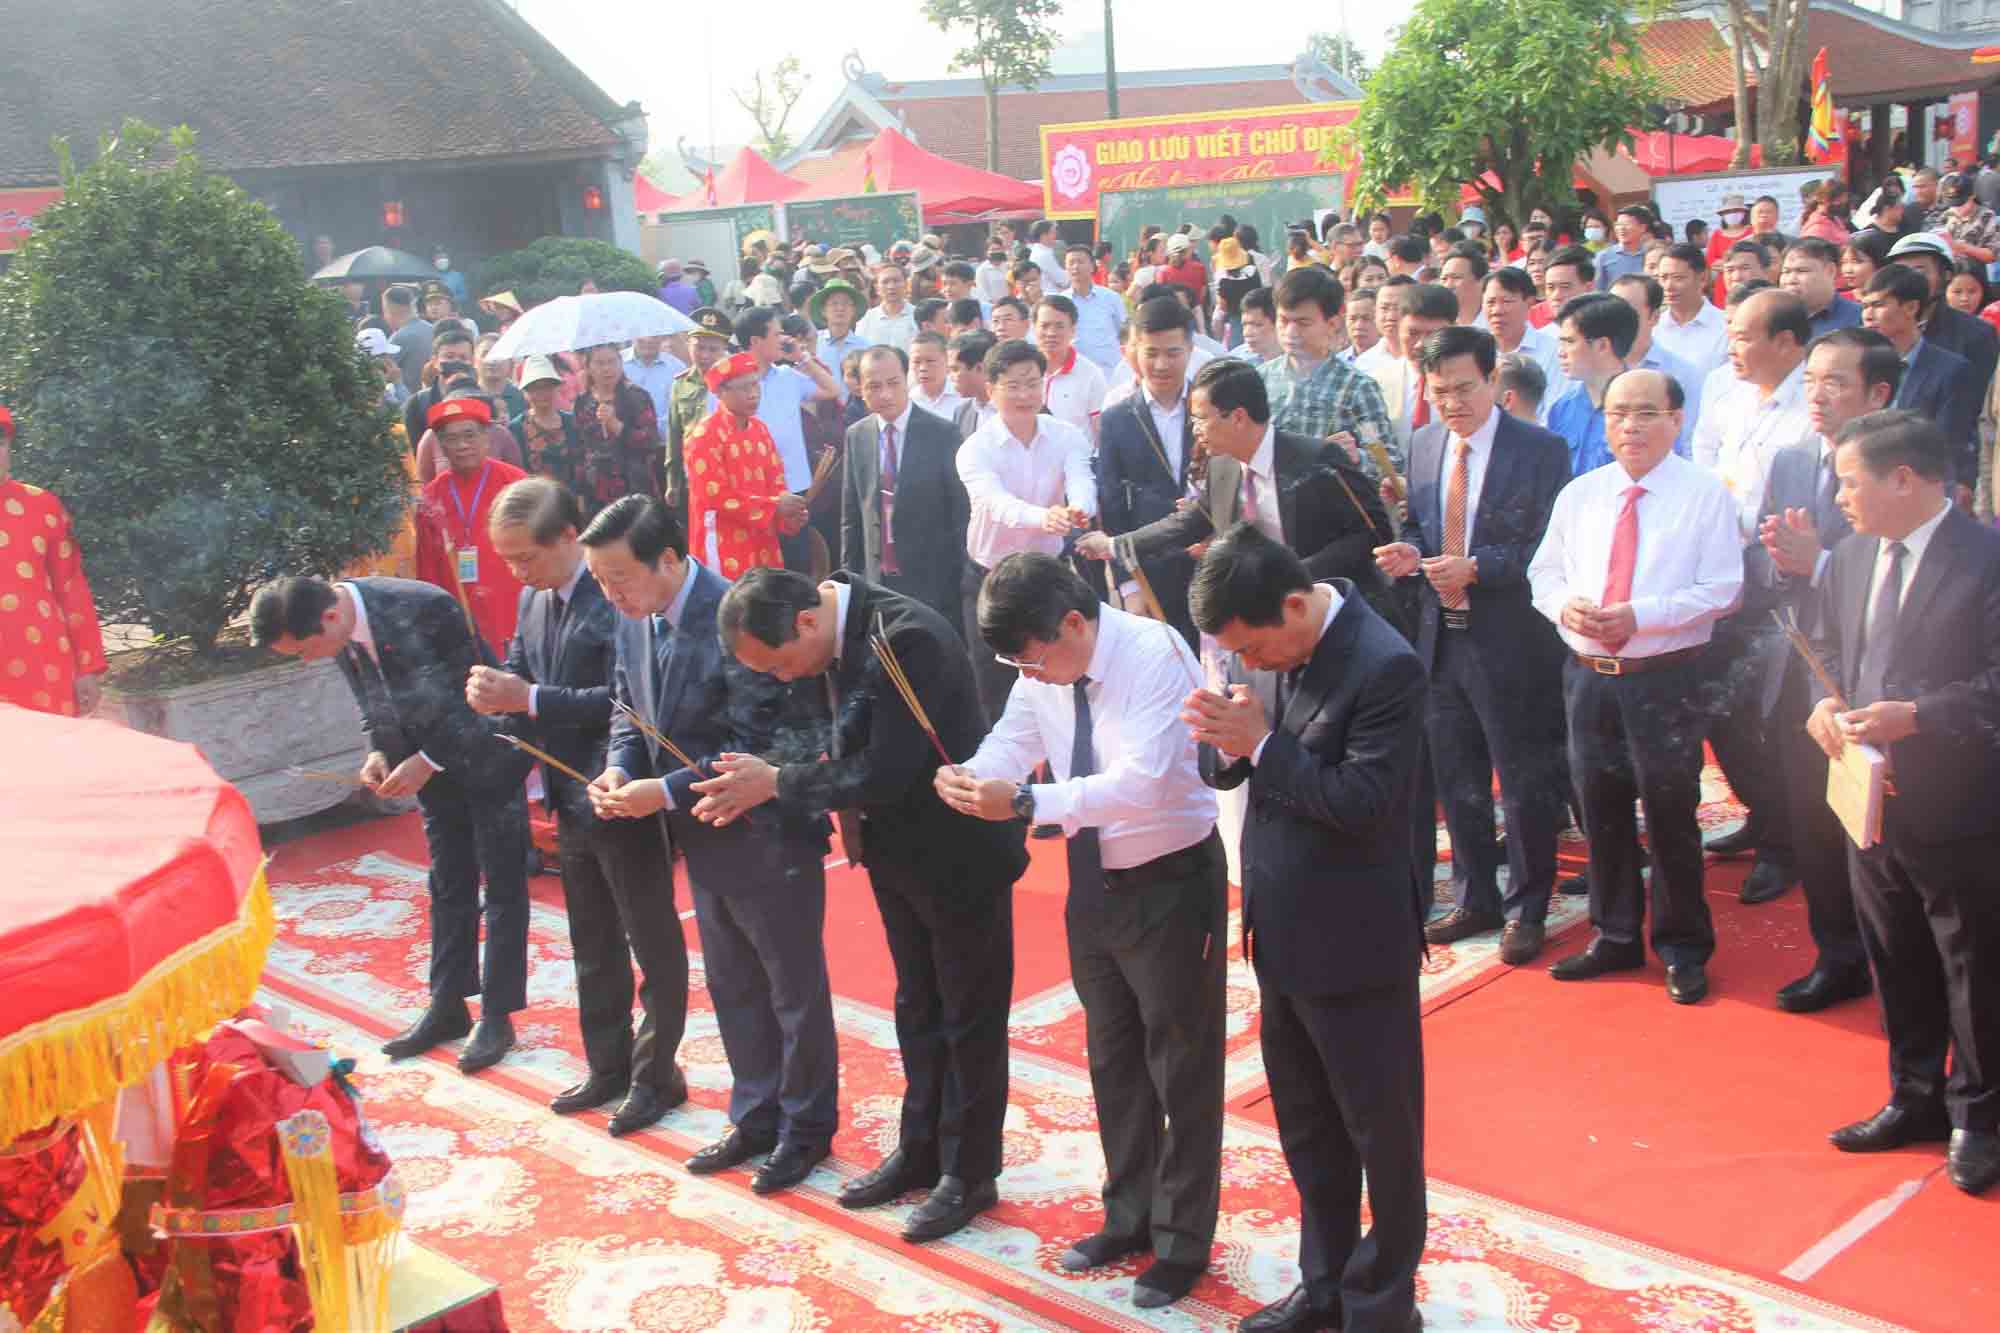 Phó Thủ tướng Chính phủ Trần Hồng Hà cùng các đại biểu tham gia tế lễ tại lễ hội Văn miếu Hà Tĩnh. Ảnh: Trần Tuấn.